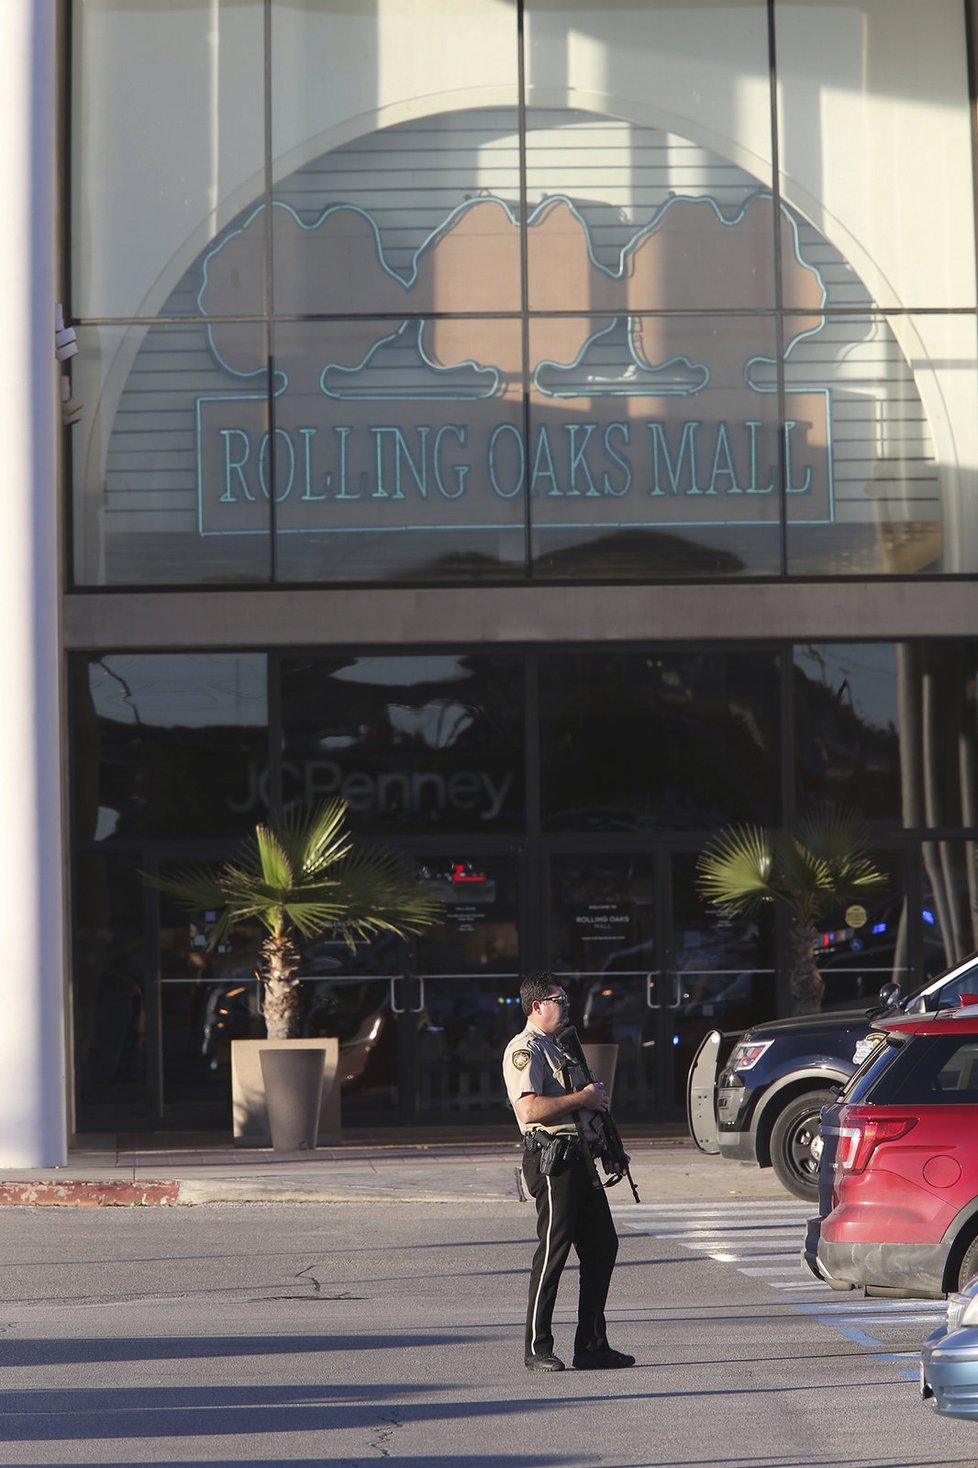 Při nedělní střelbě v nákupním středisku v americkém městě San Antonio zemřel nejméně jeden člověk a sedm dalších osob utrpělo zranění.